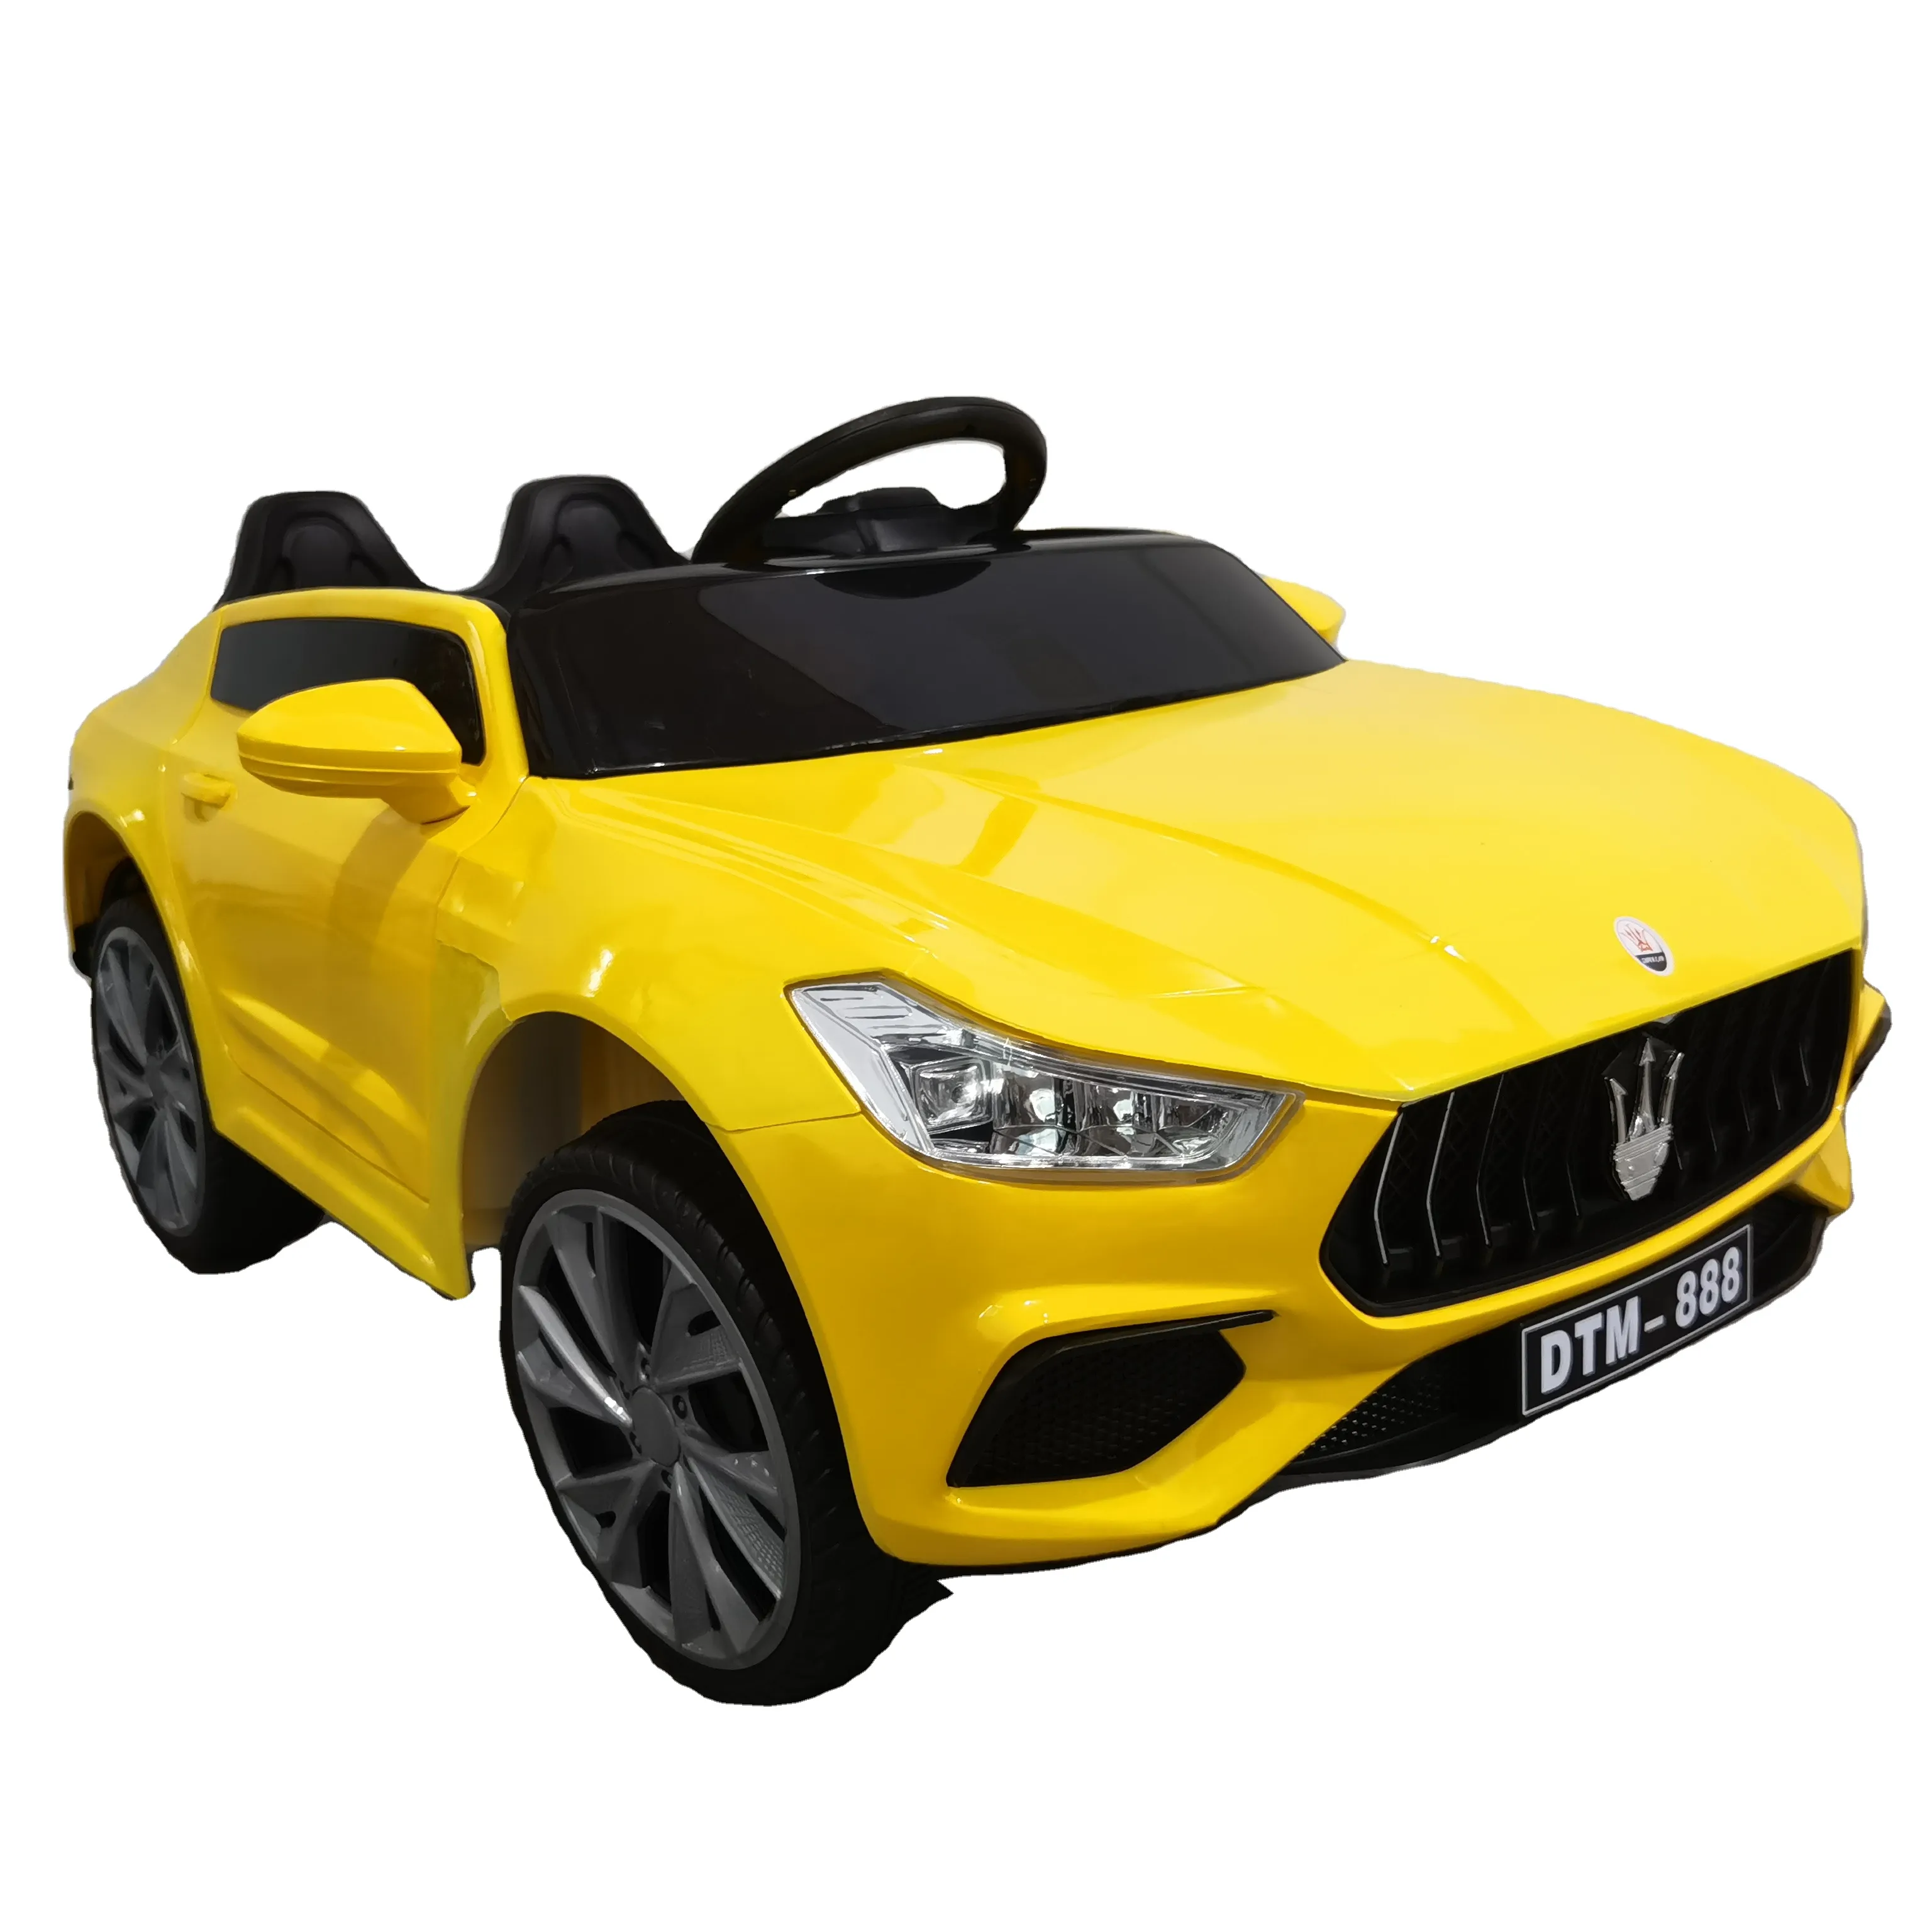 फ़ैक्टरी आपूर्ति बच्चों के लिए इलेक्ट्रिक कार/बच्चों के लिए सर्वश्रेष्ठ खिलौने, ड्राइविंग कार/बच्चों की कार बिक्री के लिए